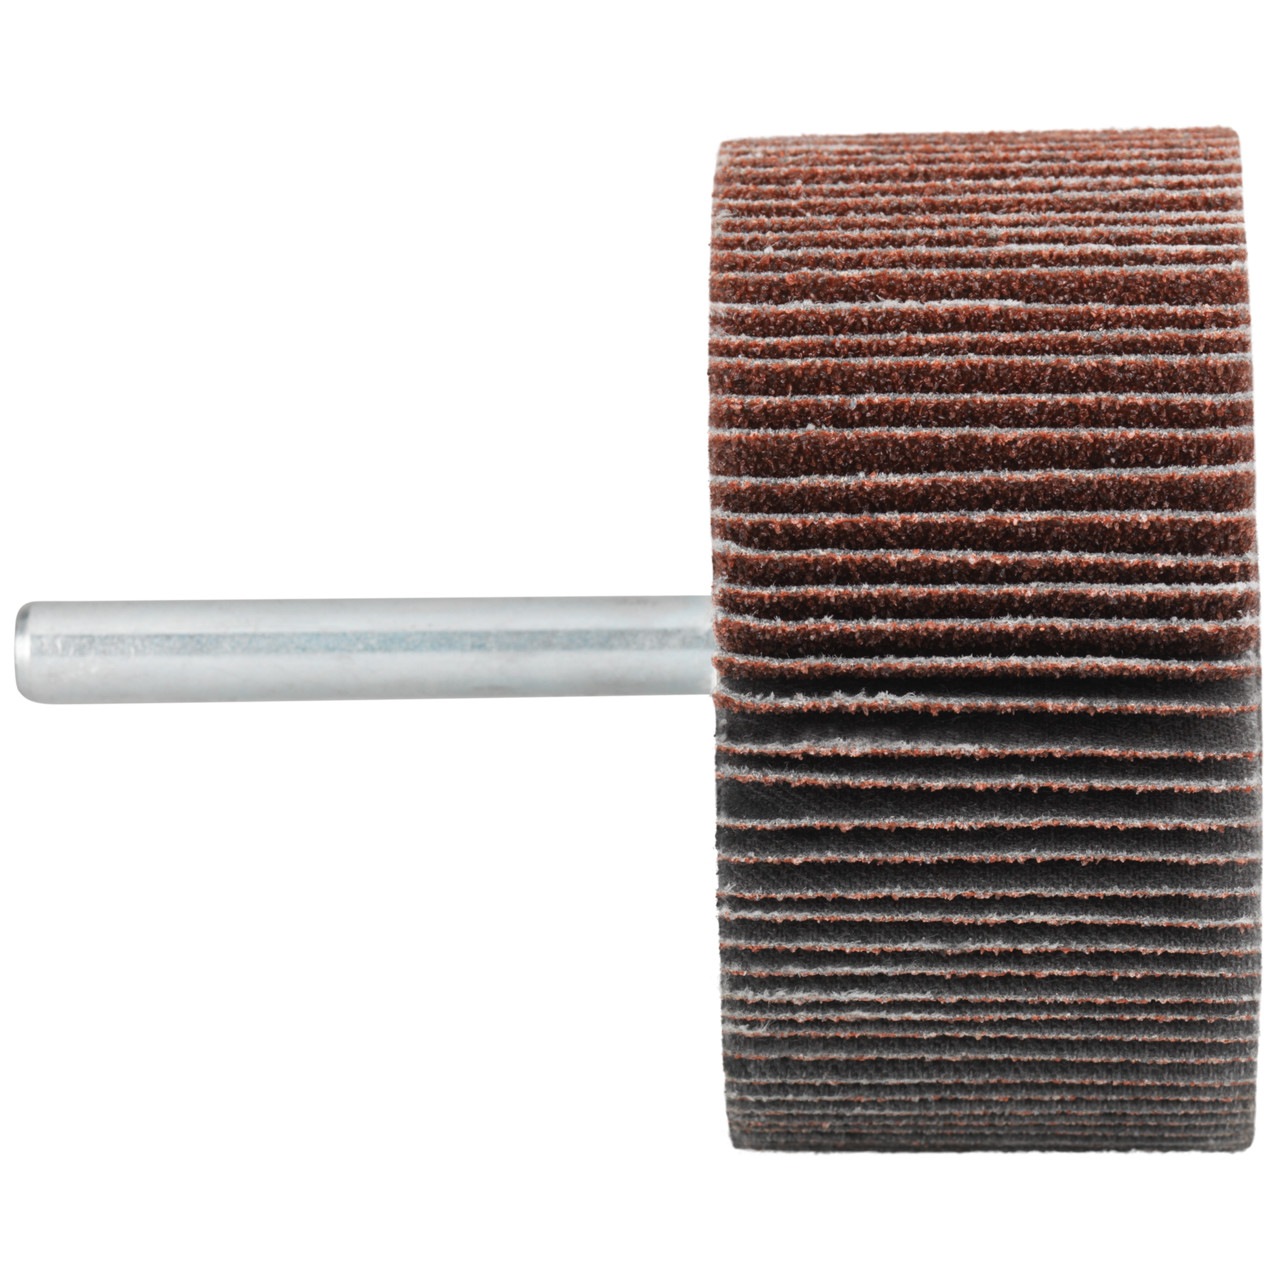 Tyrolit A-P01 C X Pennen DxD 50x15 Voor staal, roestvast staal en non-ferrometalen, P60, vorm: 52LA, Art. 816922